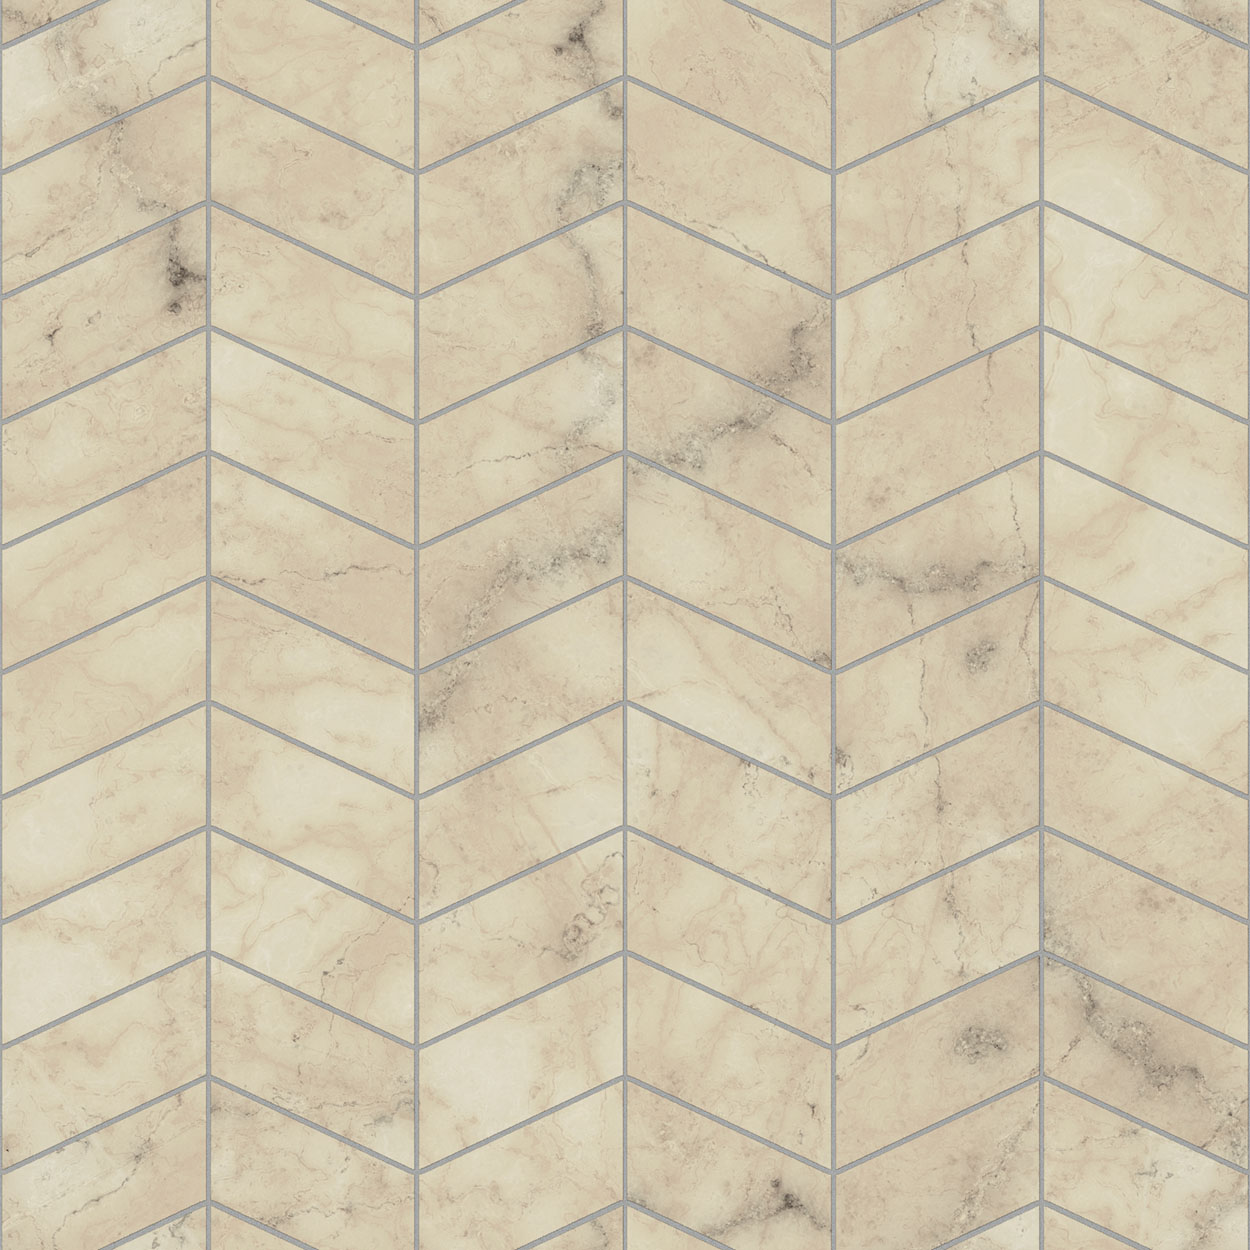 Color sample Ancient siena marble herringbone tile